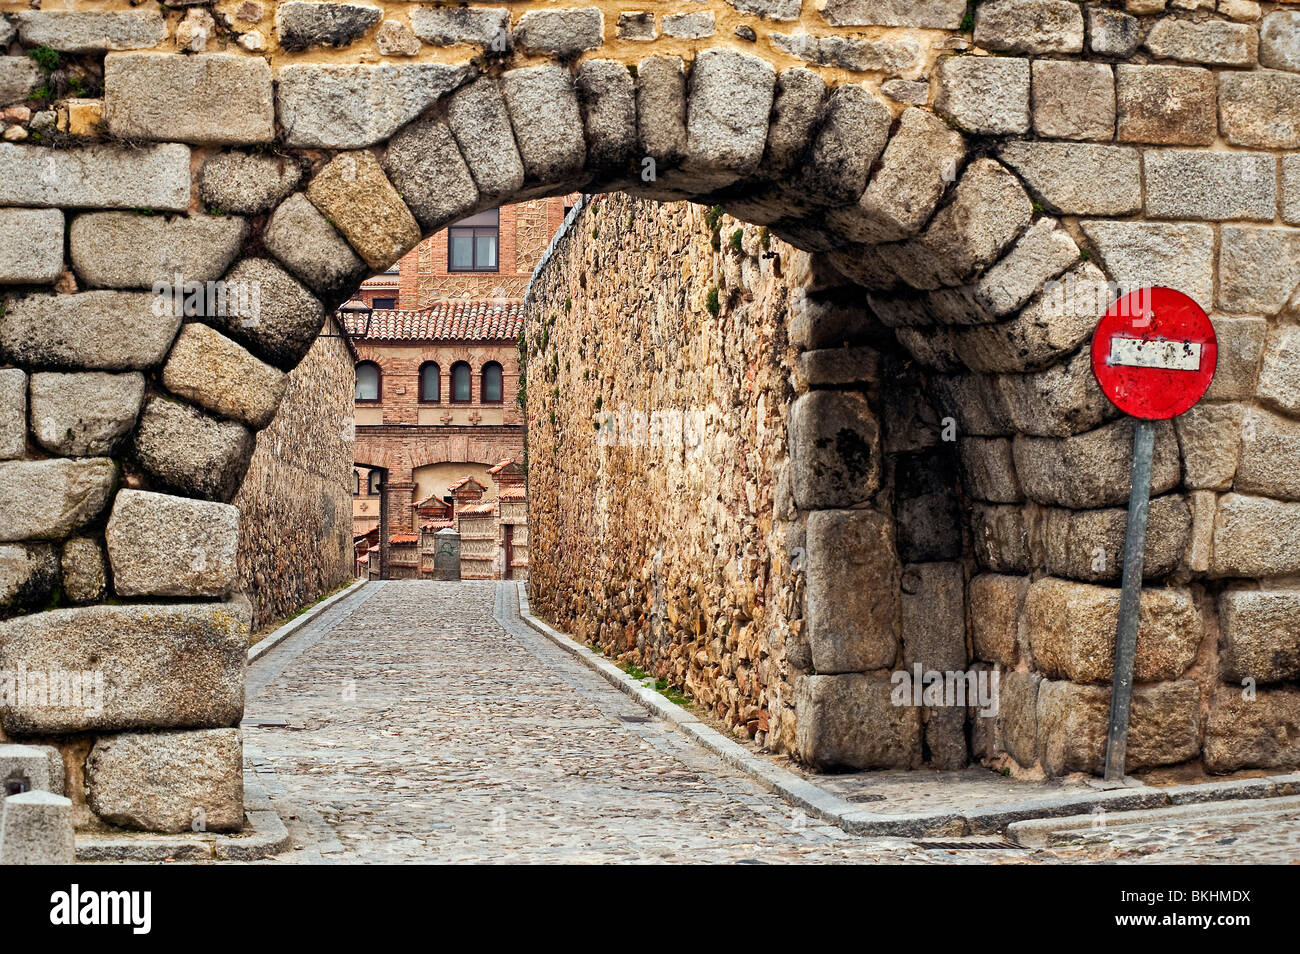 Arche en pierre et cobble stone street , Madrid, Espagne Banque D'Images